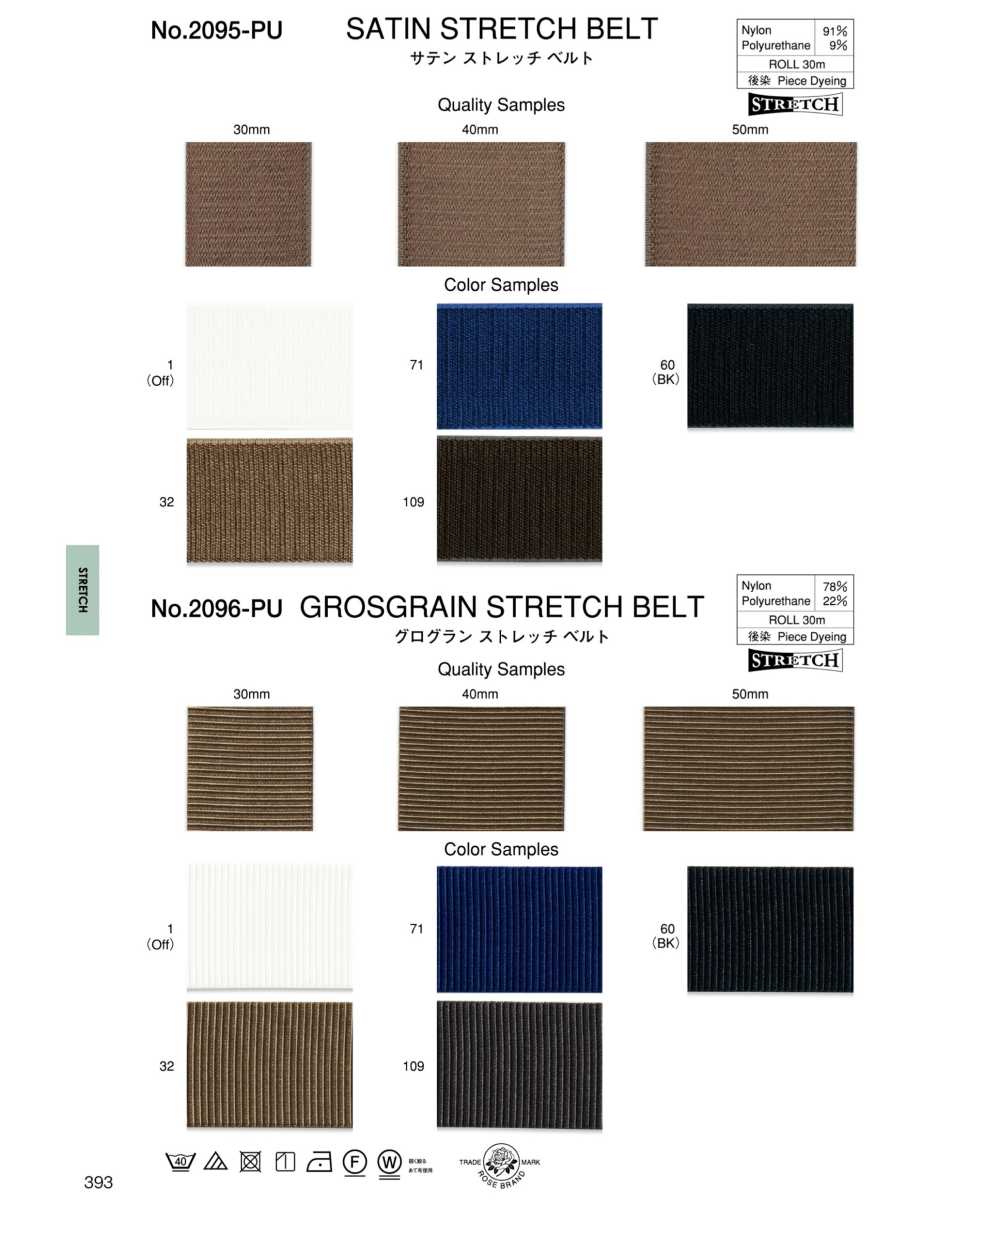 2096-PU Grosgrain Stretch Belt[Ribbon Tape Cord] ROSE BRAND (Marushin)